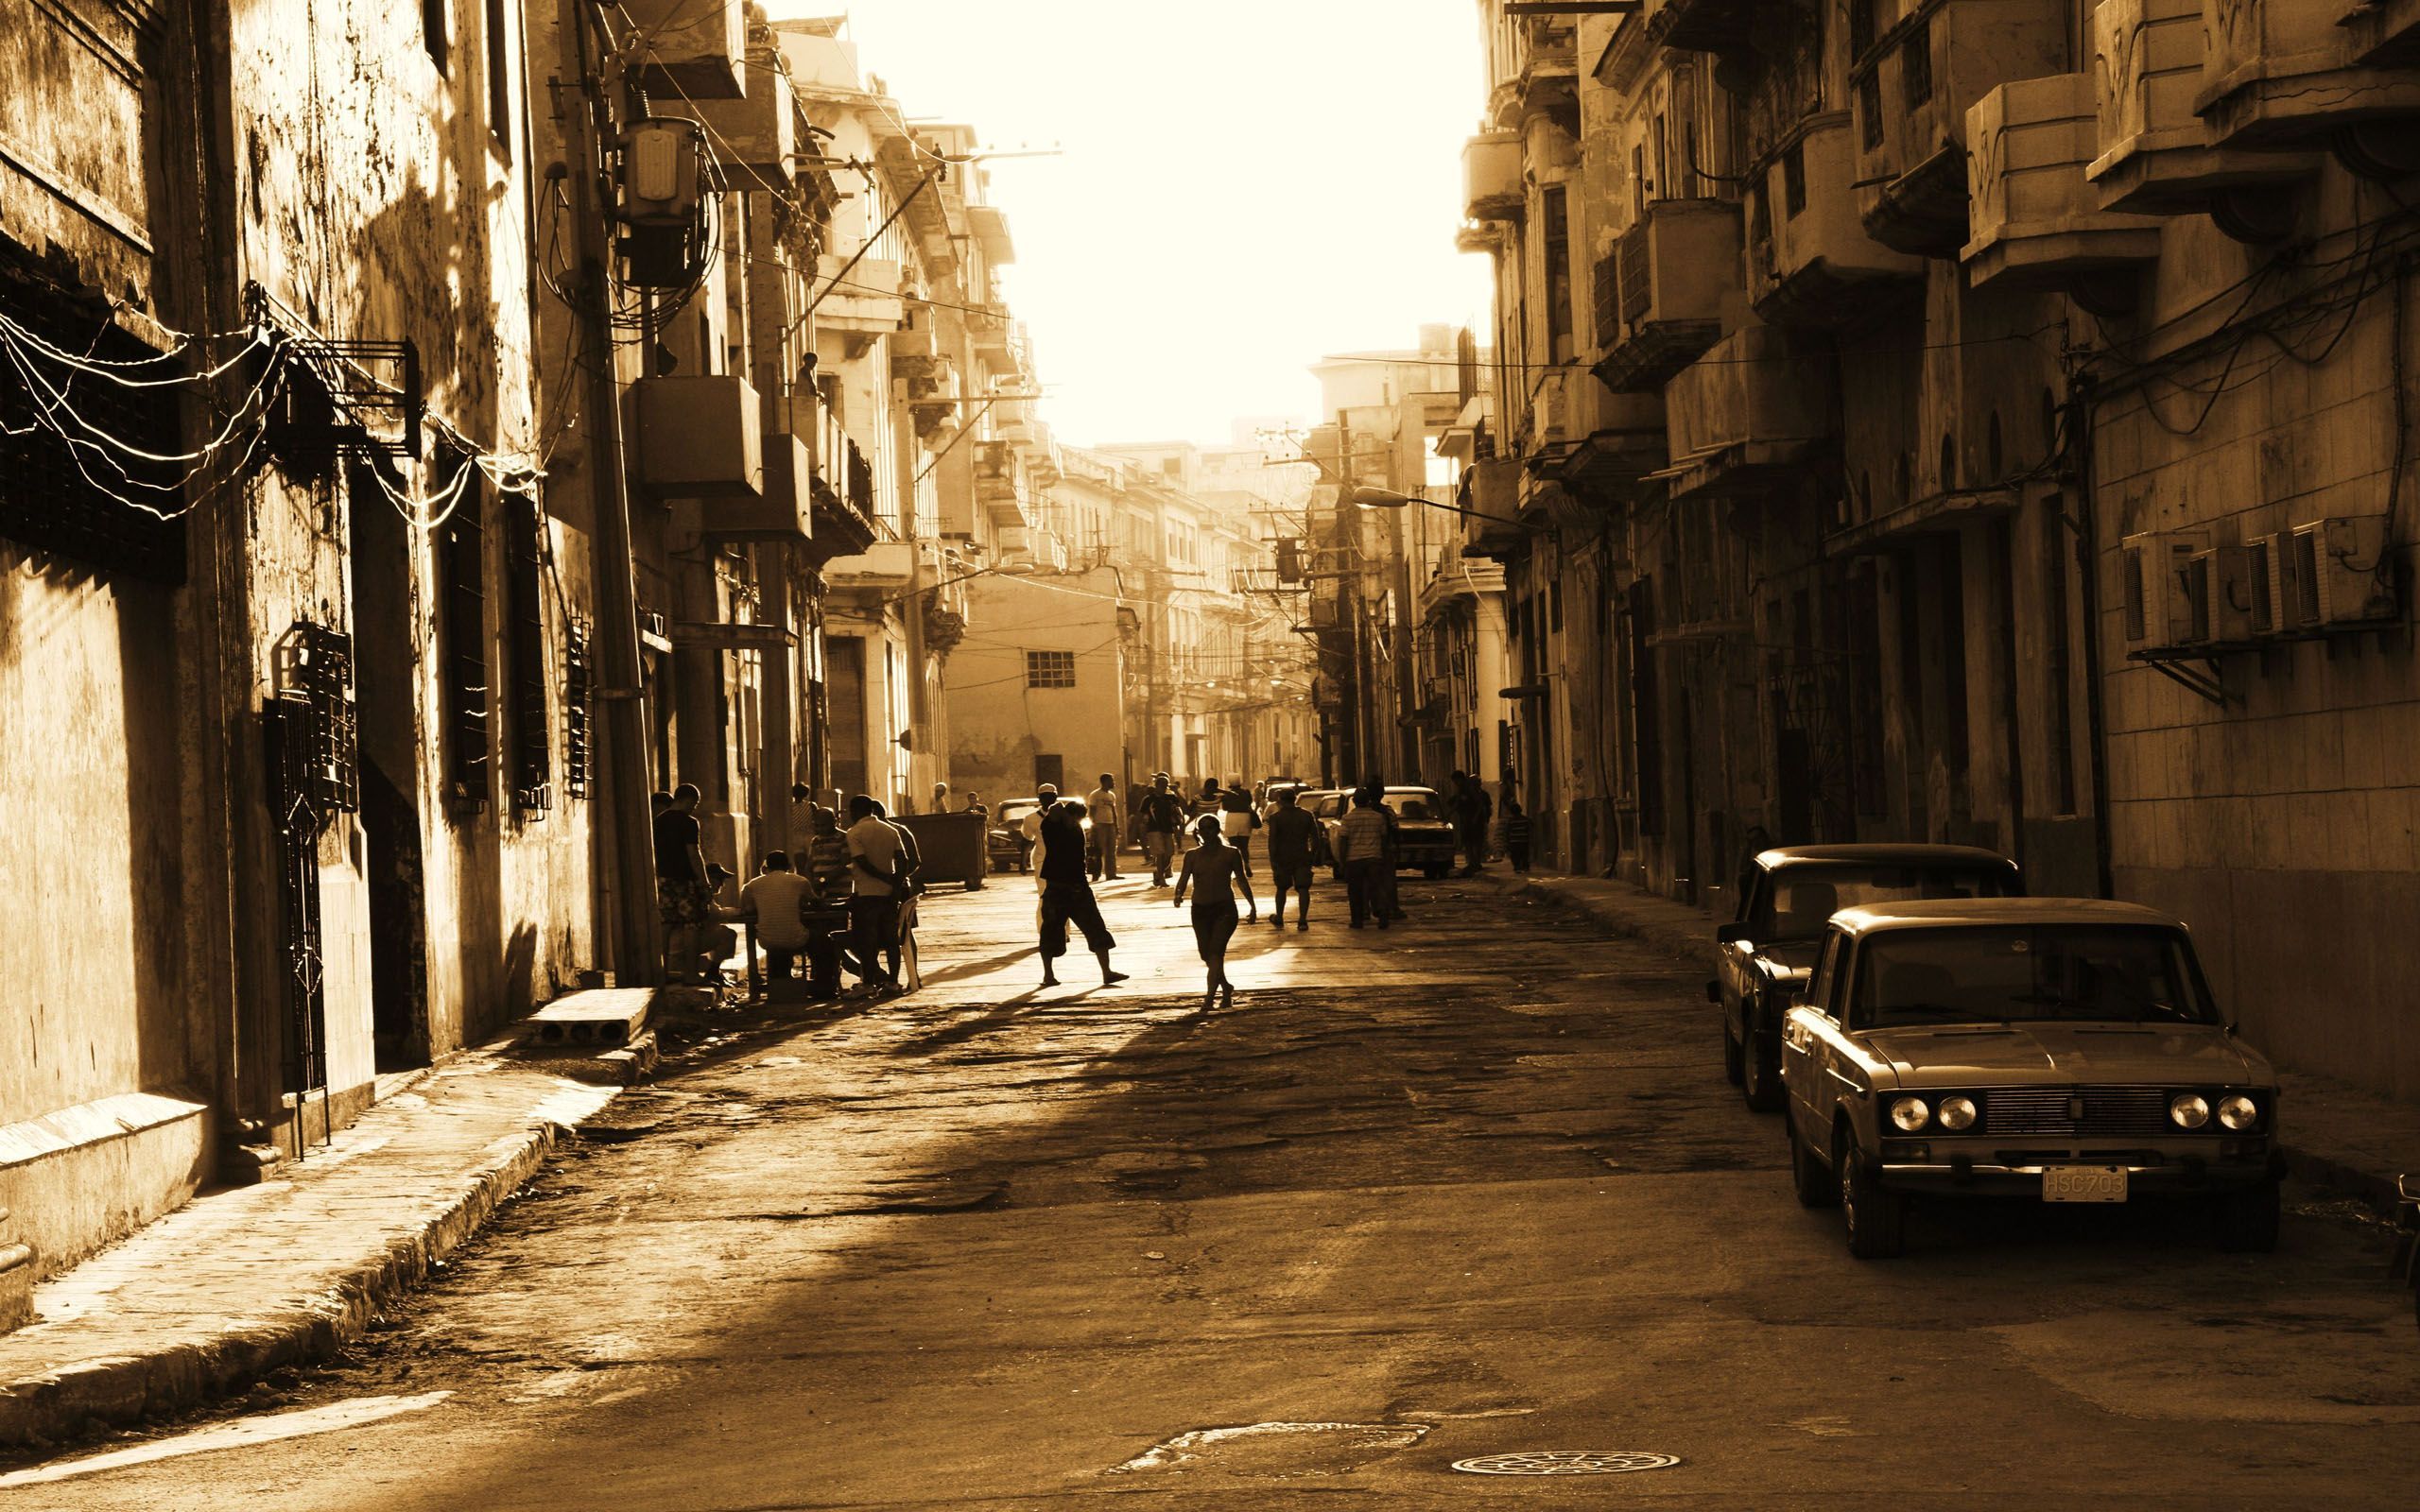 Fonds d'écran Cuba : tous les wallpapers Cuba